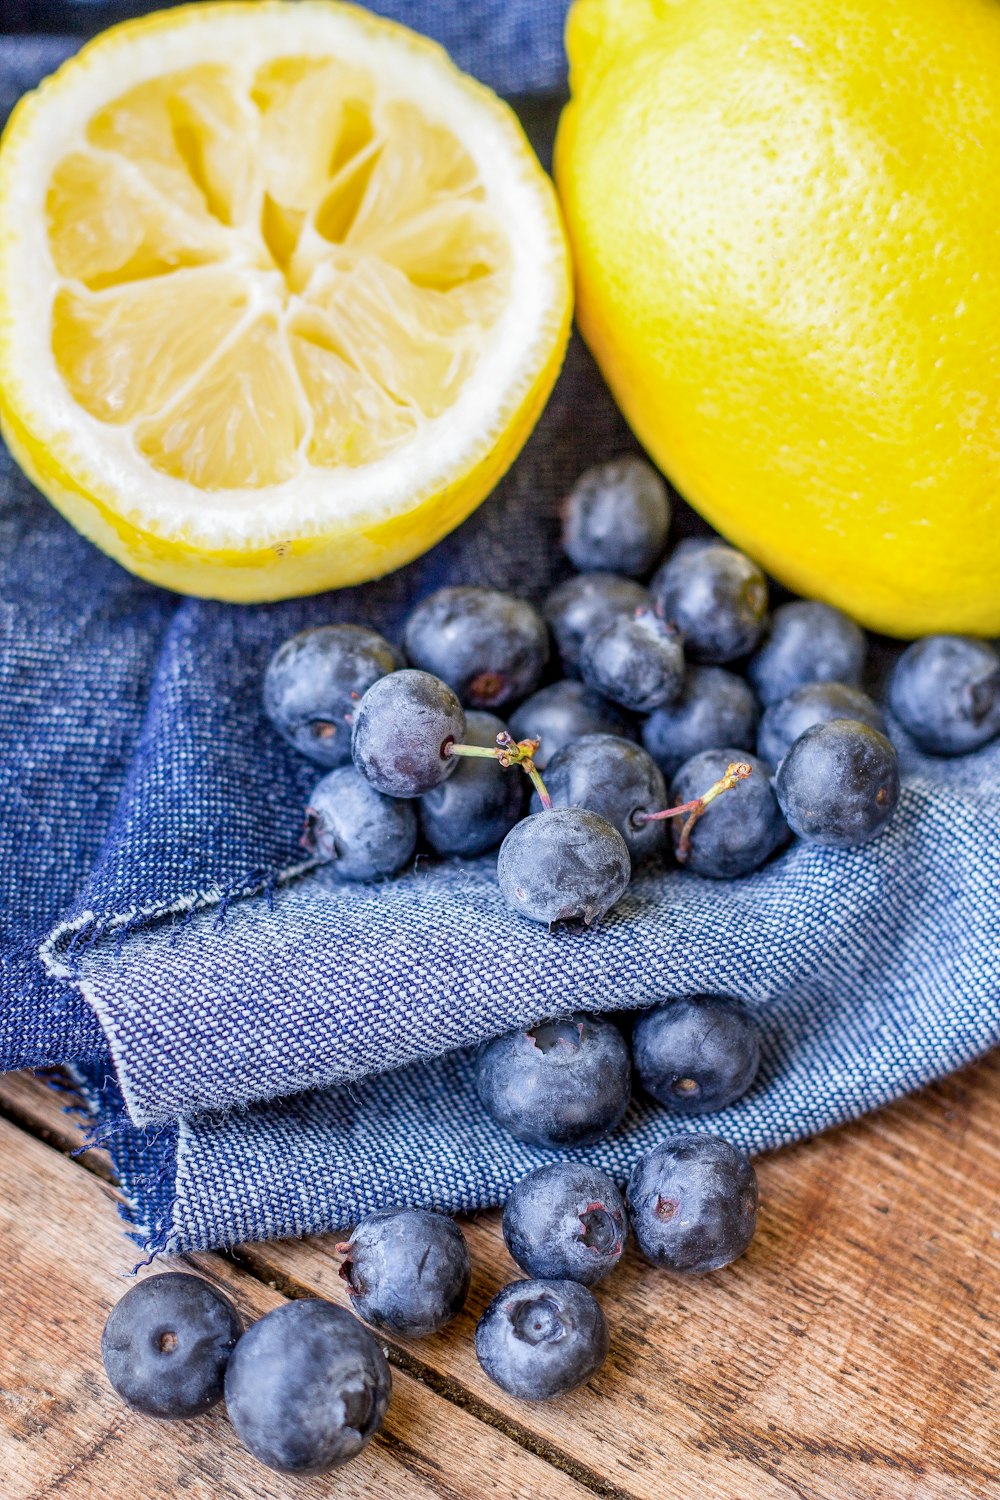 블루베리 과일 근처 노란 레몬 근접 촬영 사진